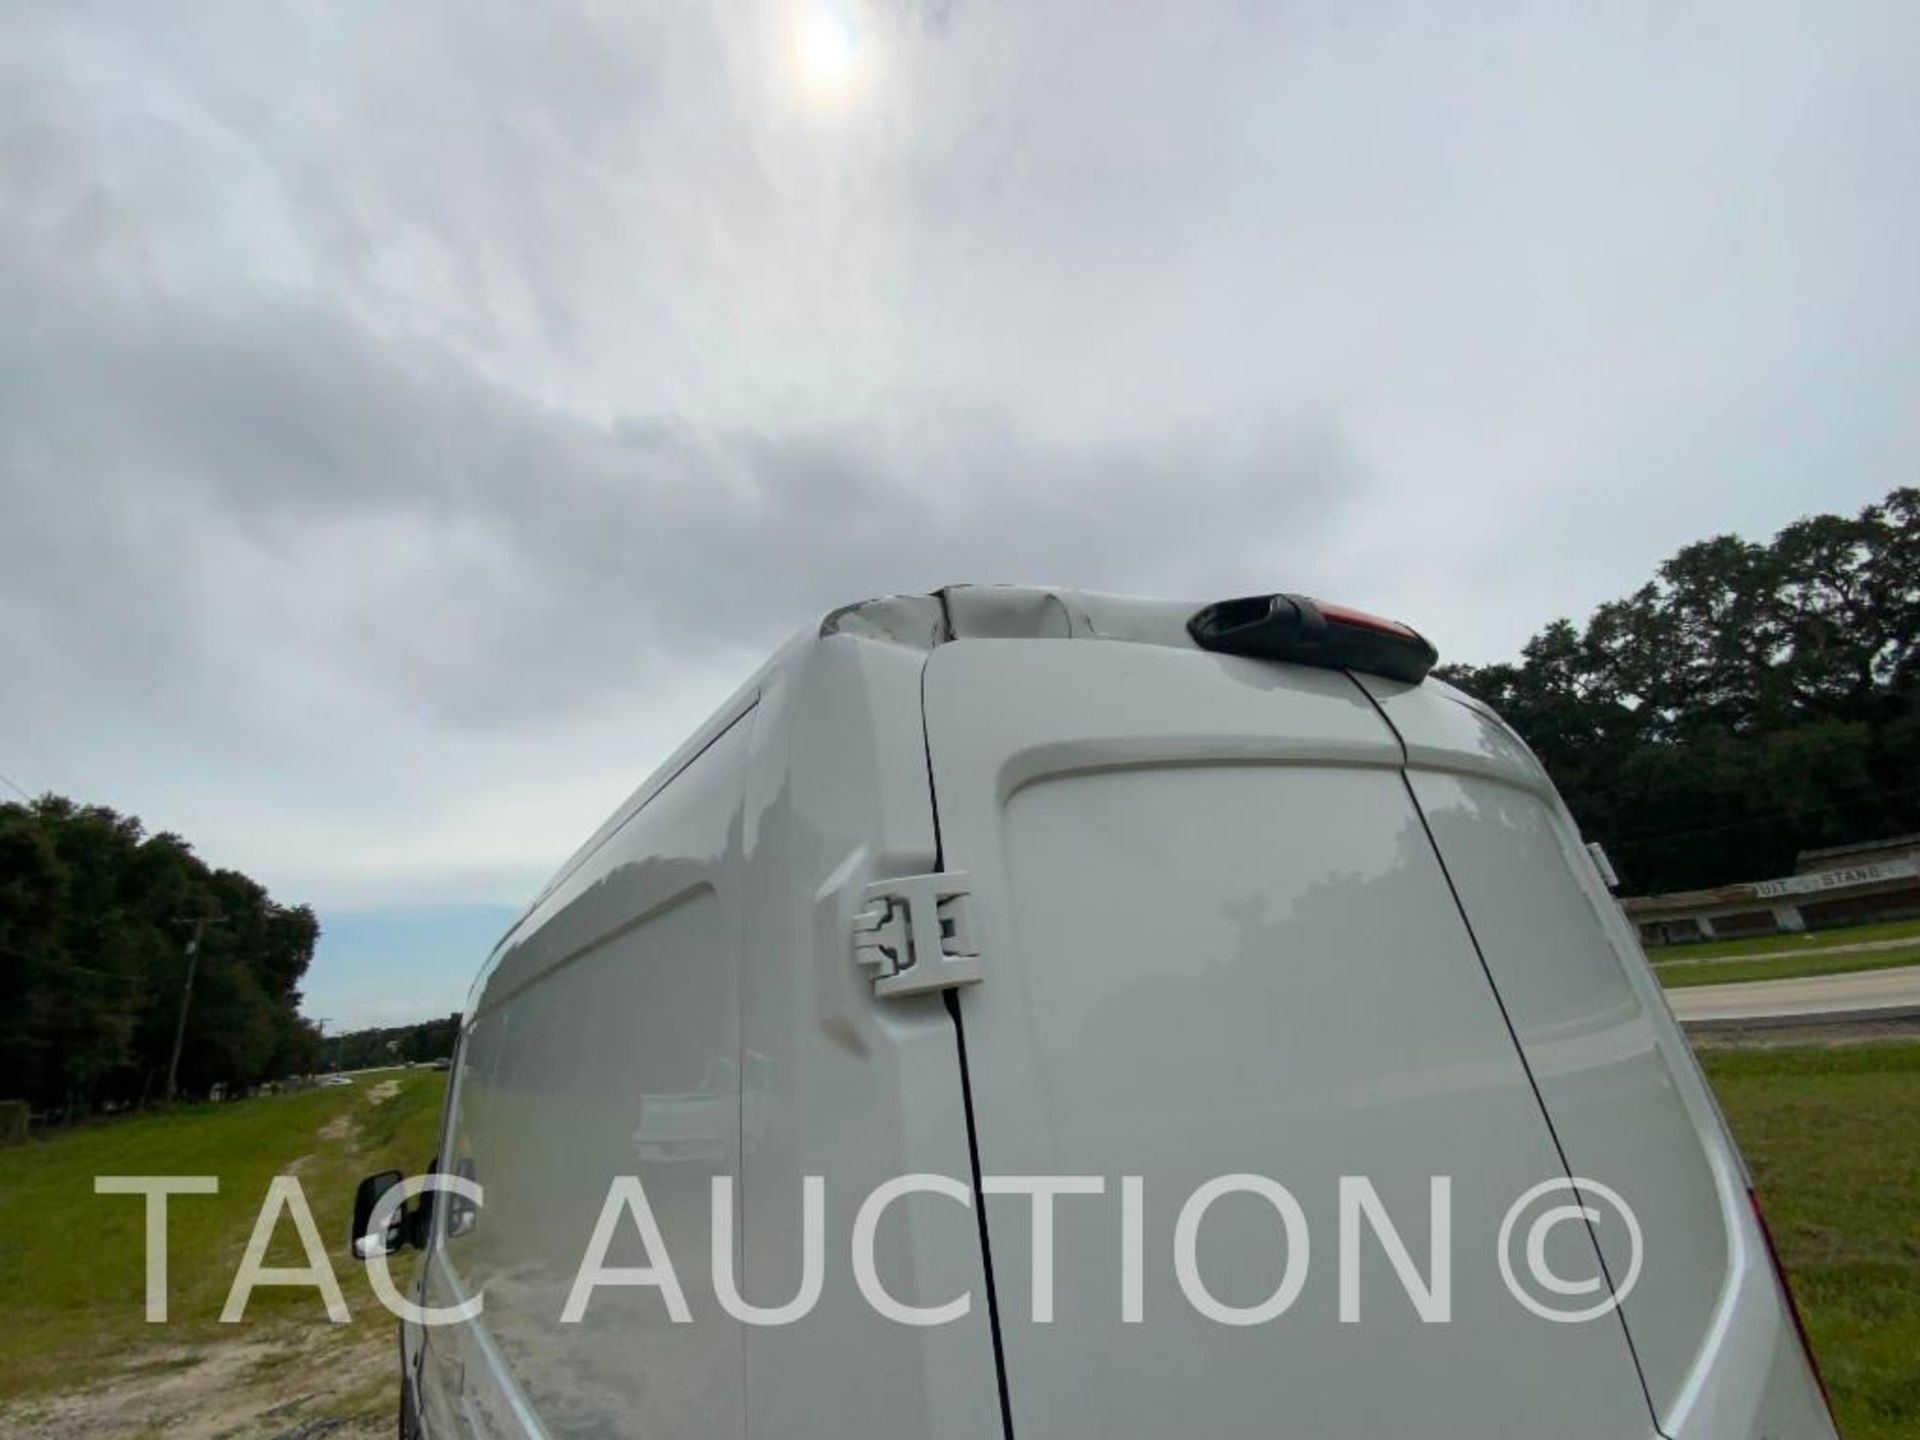 2019 Ford Transit 150 Cargo Van - Image 38 of 54